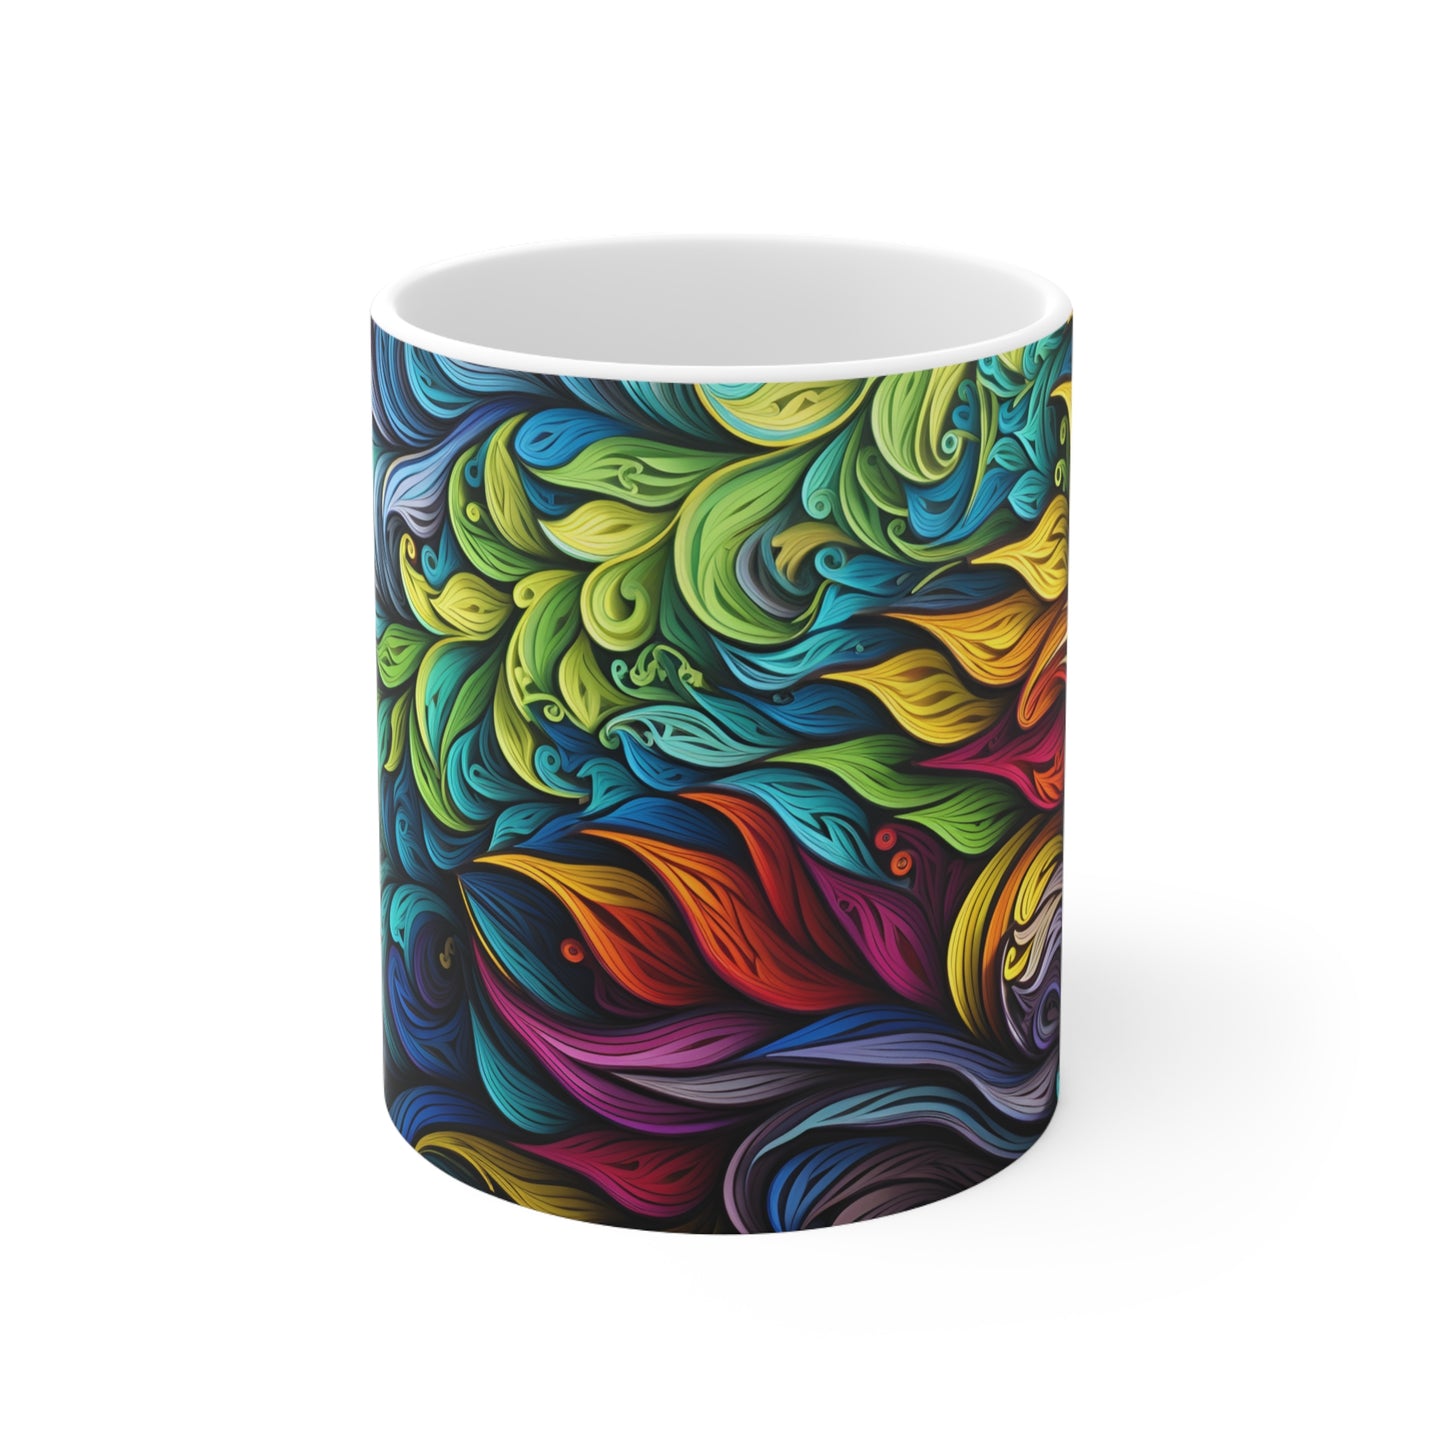 Abstract Colorful Mug